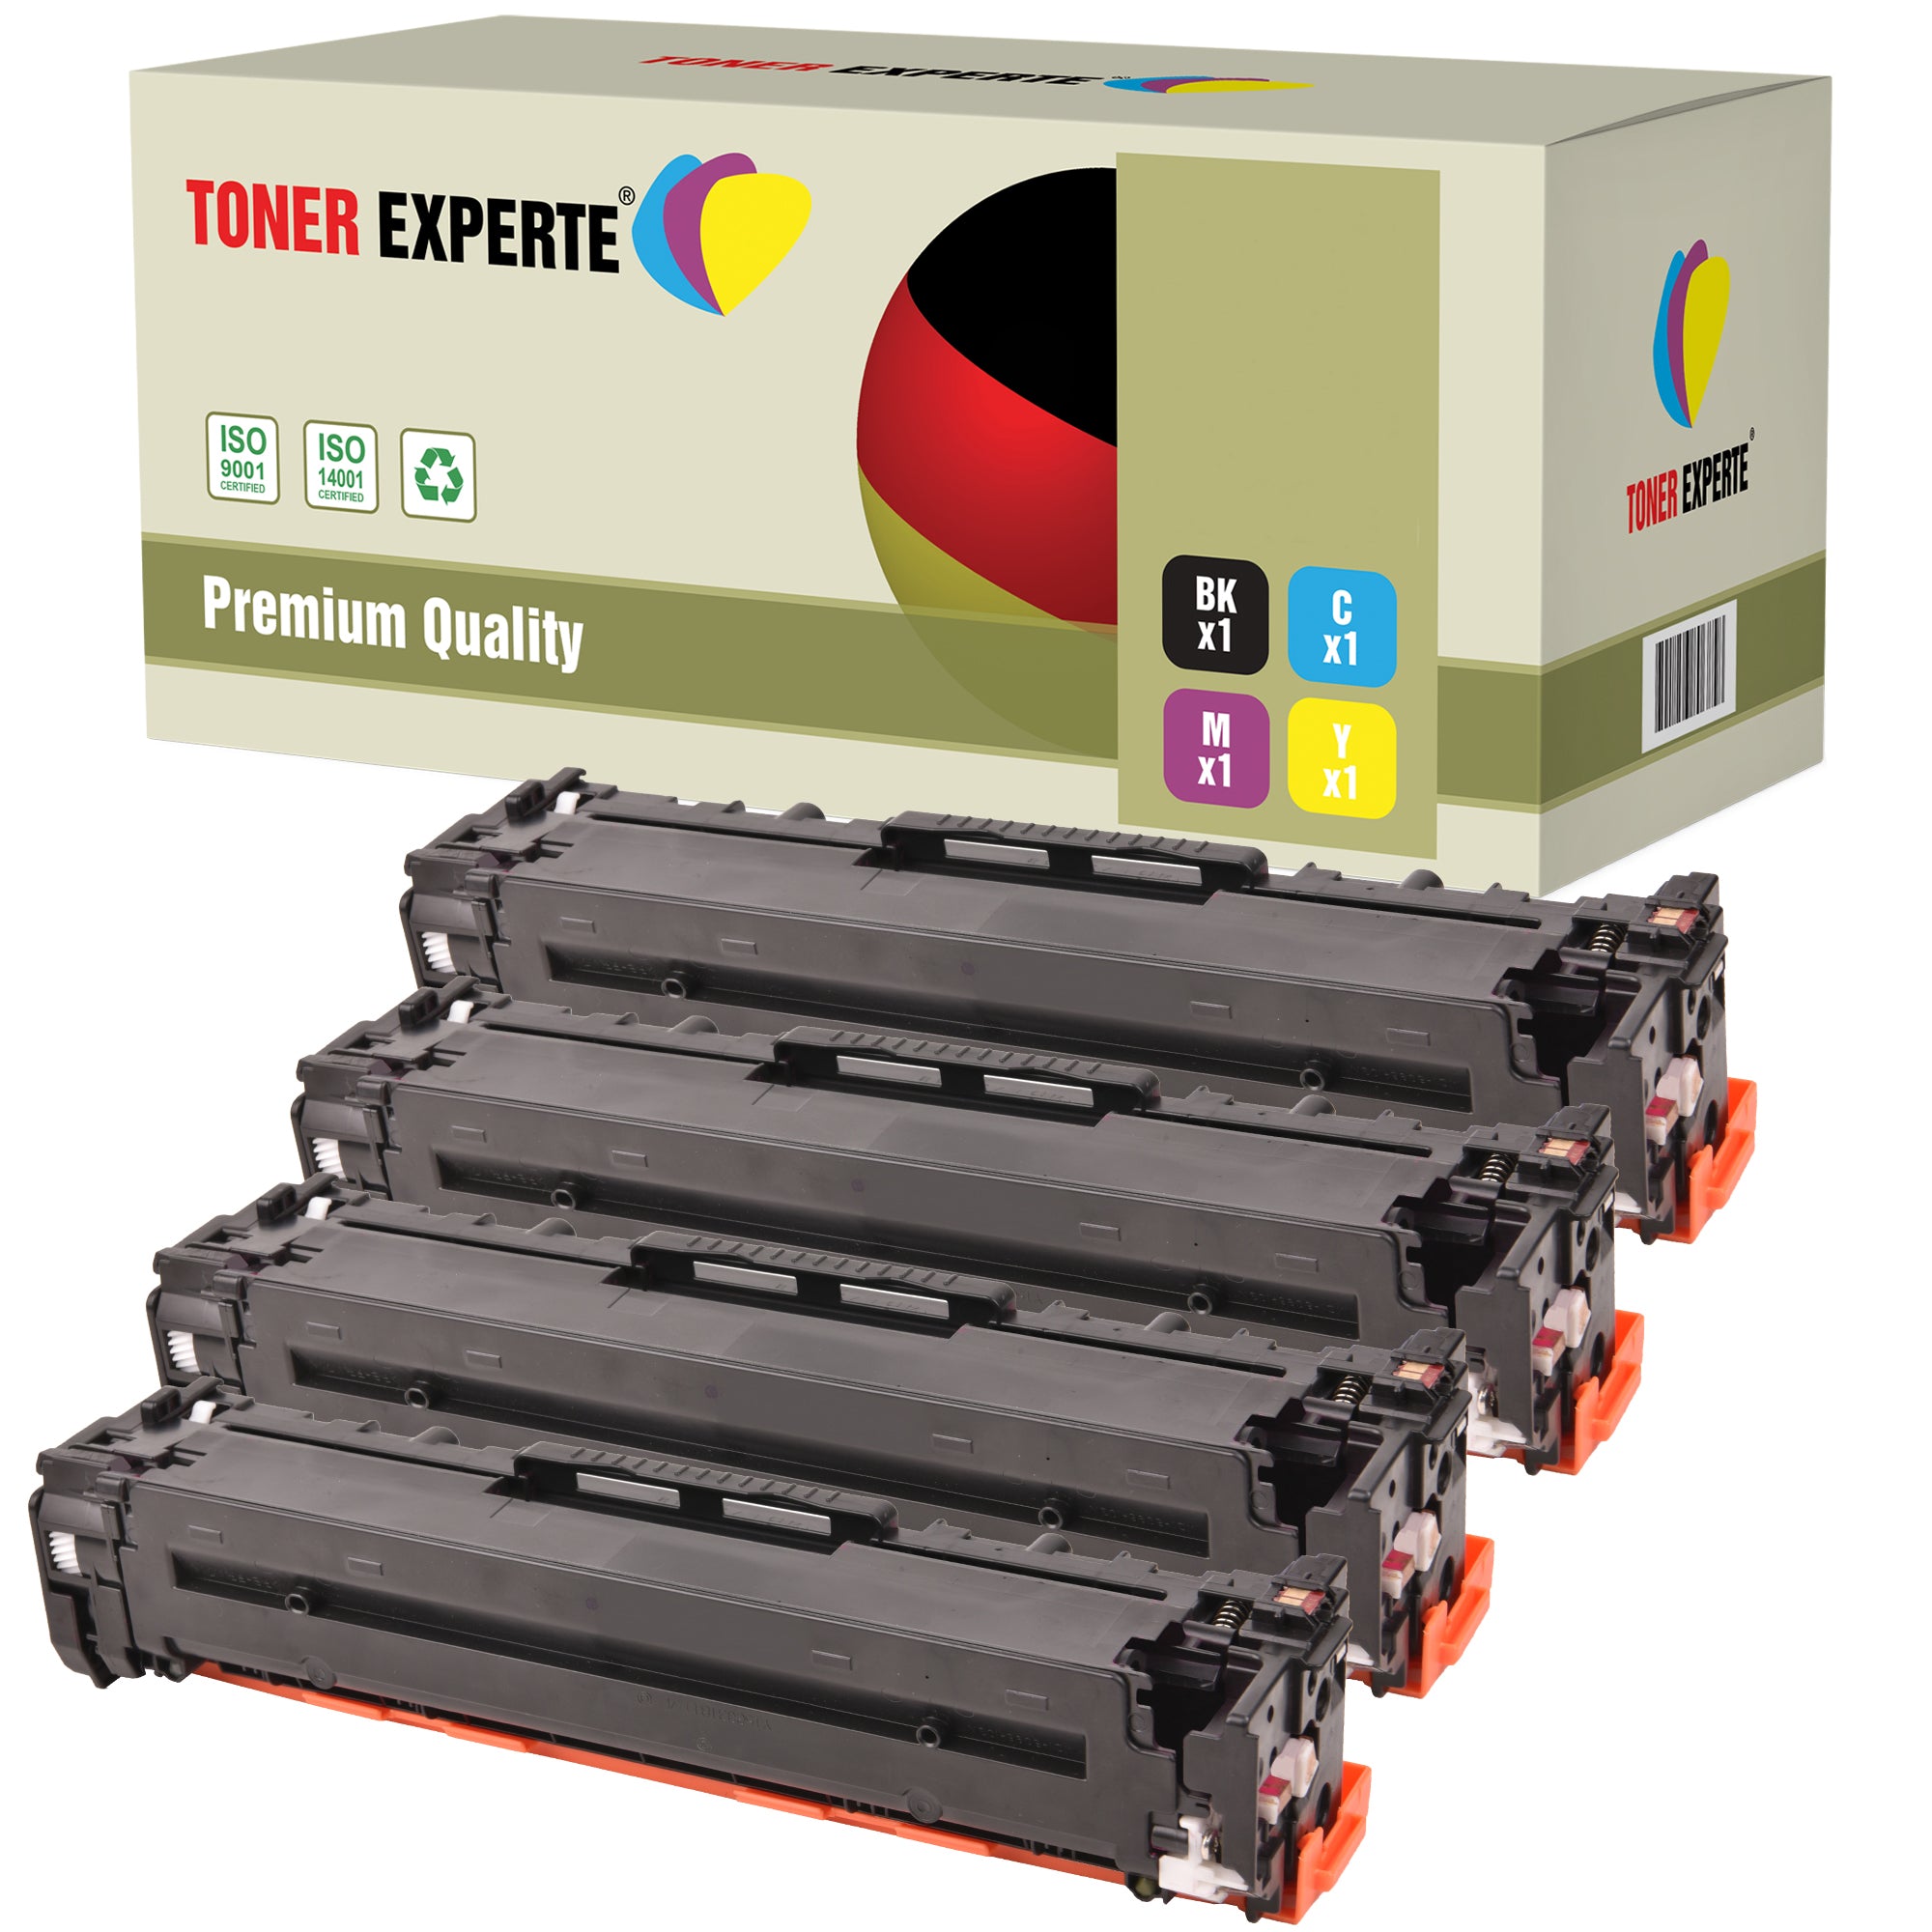 Compatible 312X/312A CF380X CF381A CF382A CF383A Premium Toner Cartridge for HP LaserJet - Toner Experte